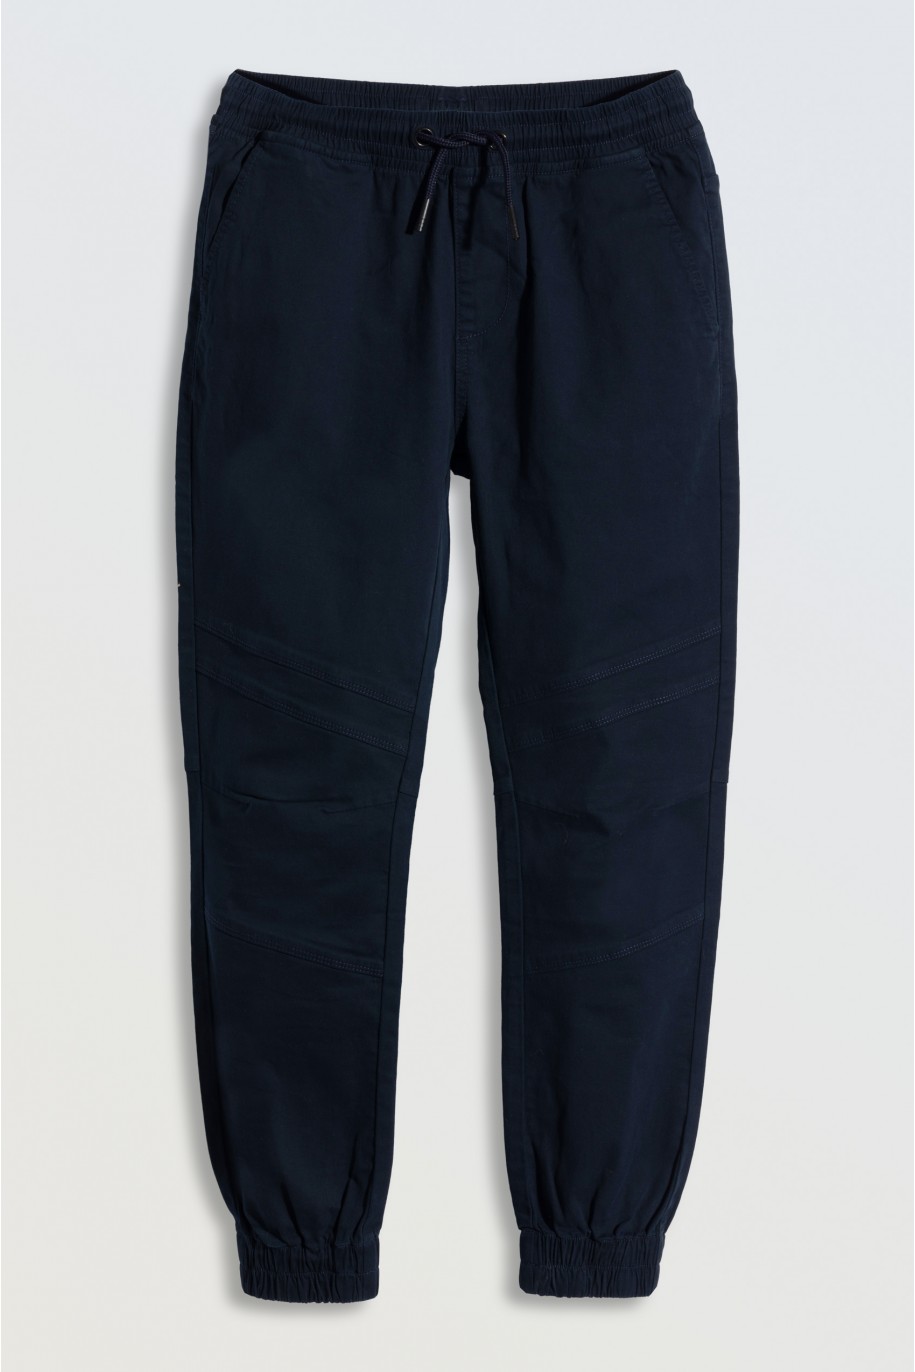 Granatowe spodnie typu joggery z modnymi przeszyciami - 46667